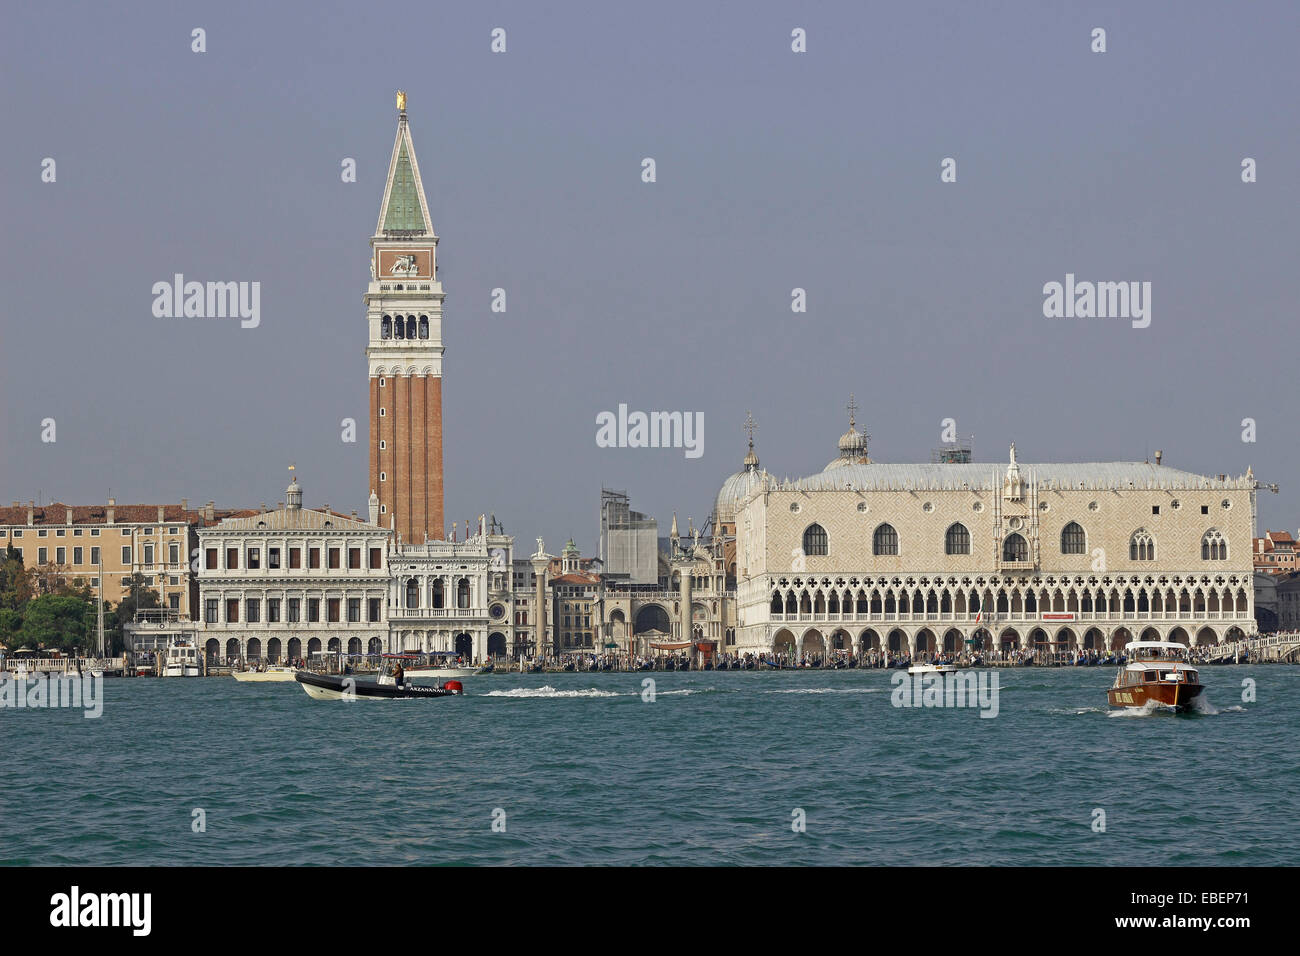 Venecia Italia Piazza San Marco de Venecia Laguna Campanile Palacio Ducal arquitectura Biblioteca Nacional de barcos Foto de stock